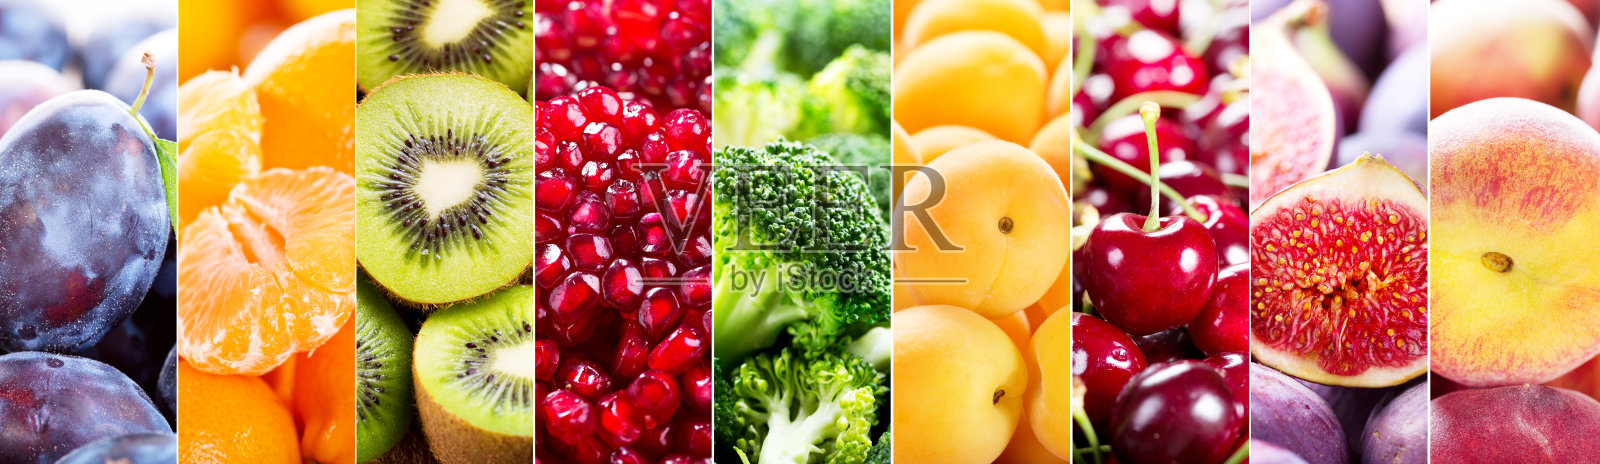 新鲜水果和蔬菜的拼贴画照片摄影图片